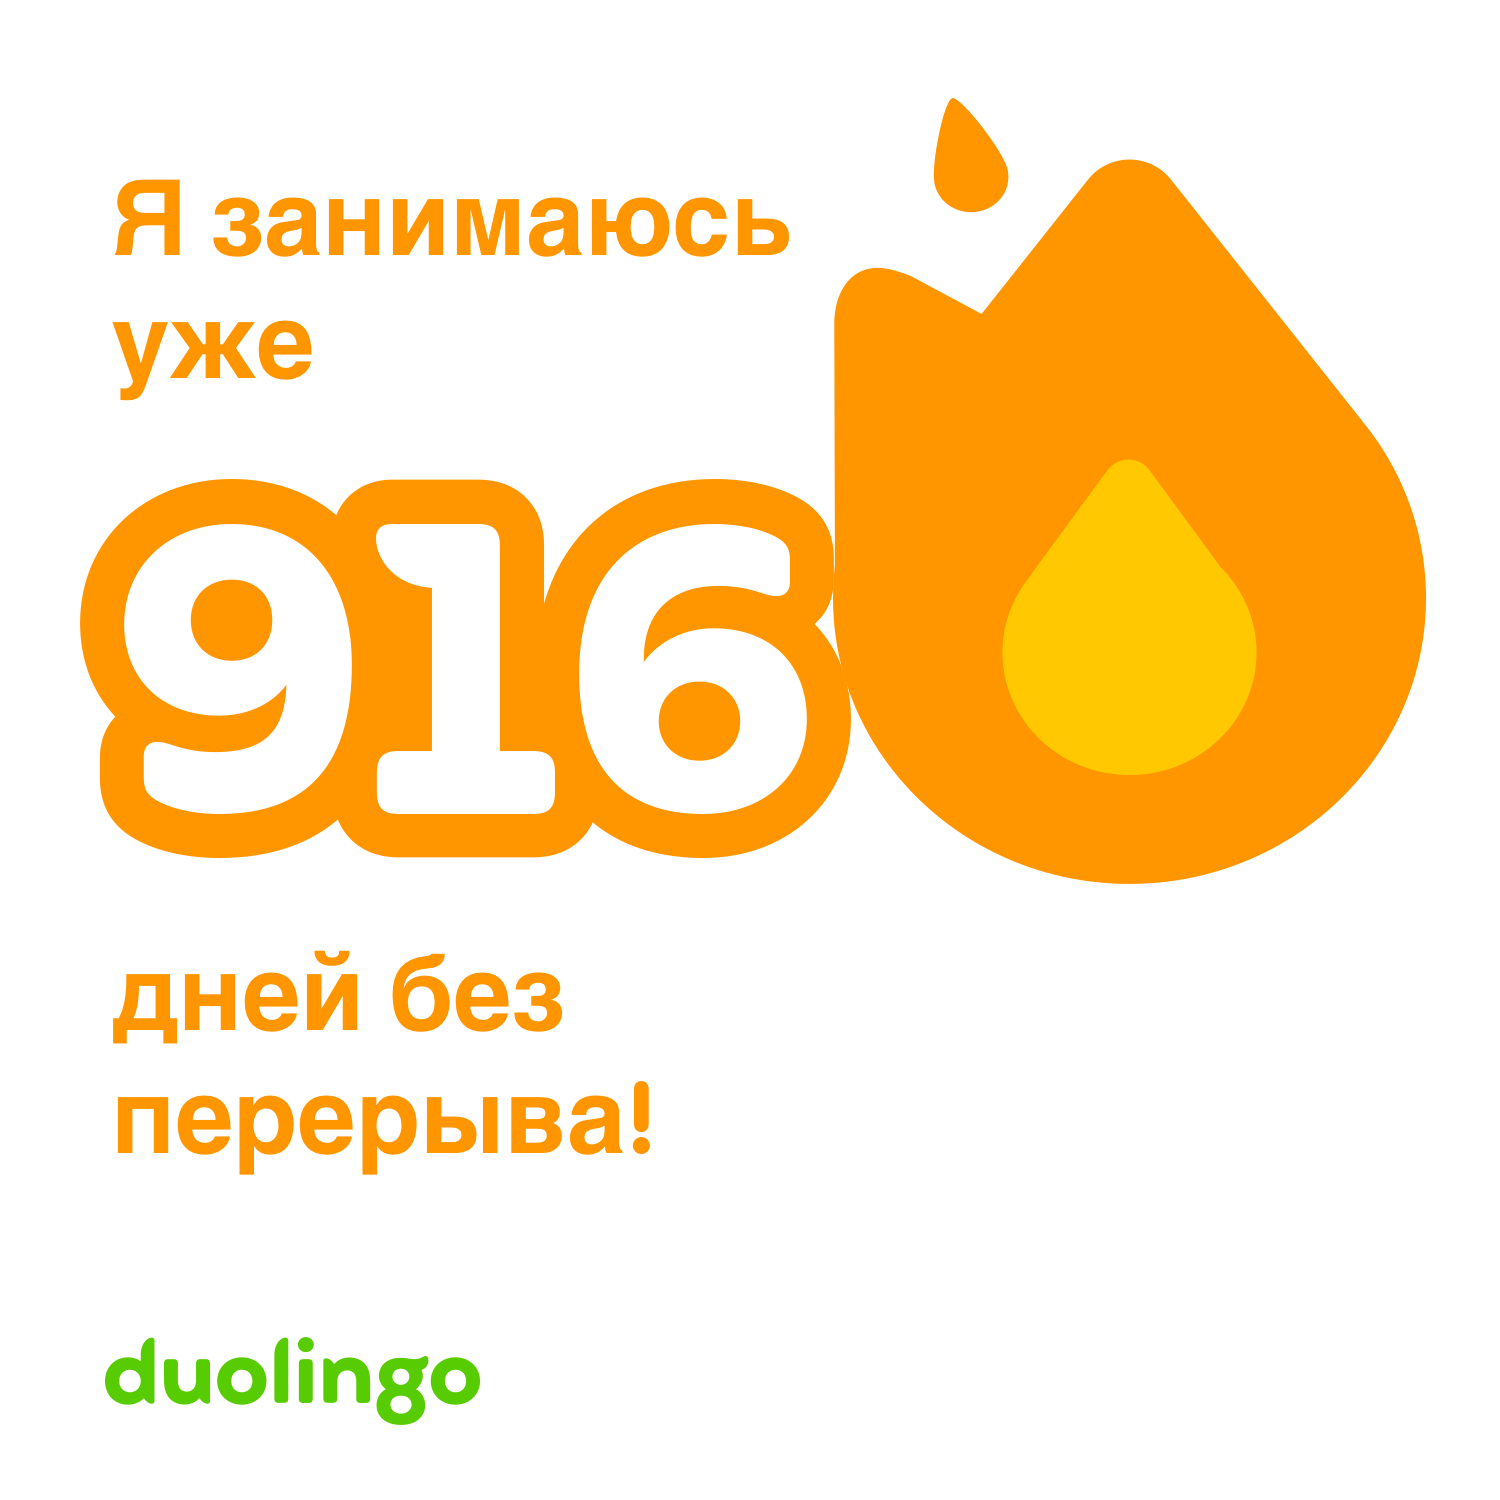 Я занимаюсь английским в Duolingo уже 916 дней